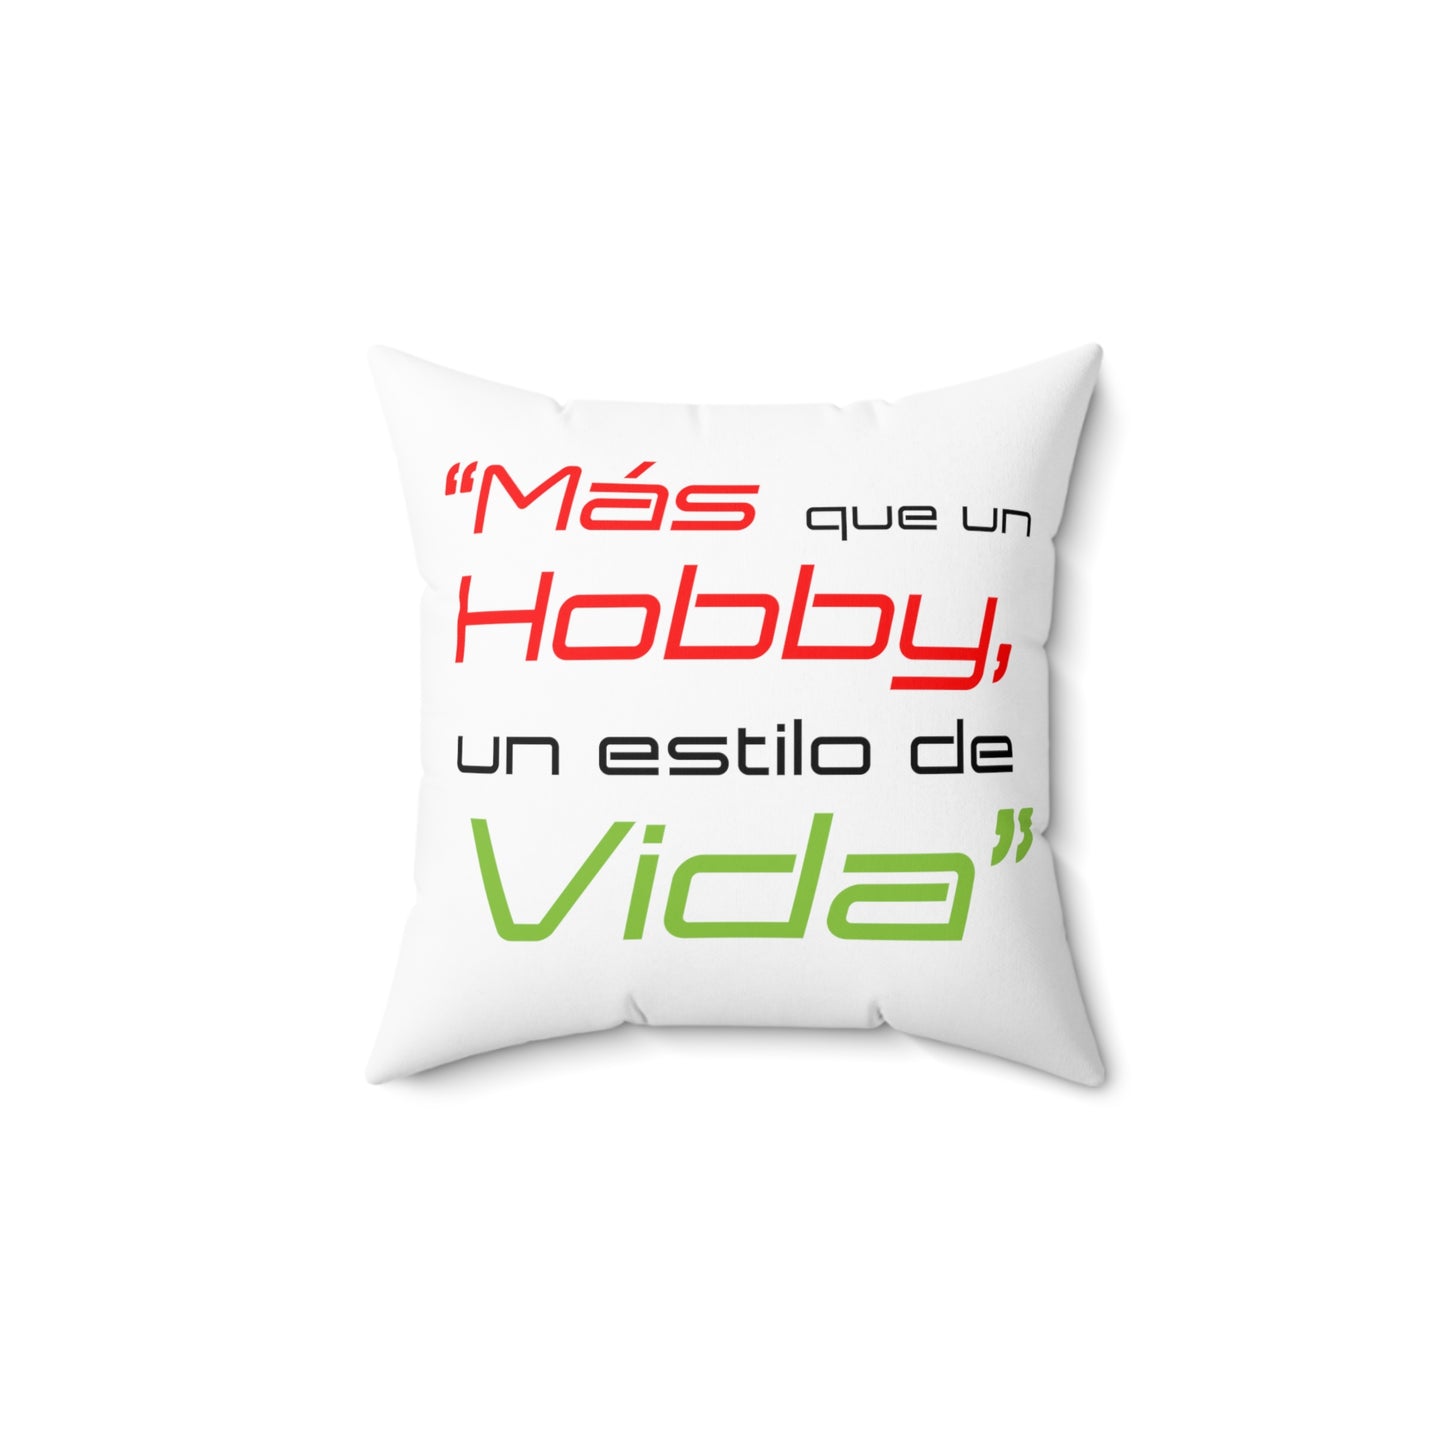 "Mas que un Hobby, es un estilo de VIDA" - LOGO OG - Spun Polyester Square Pillow